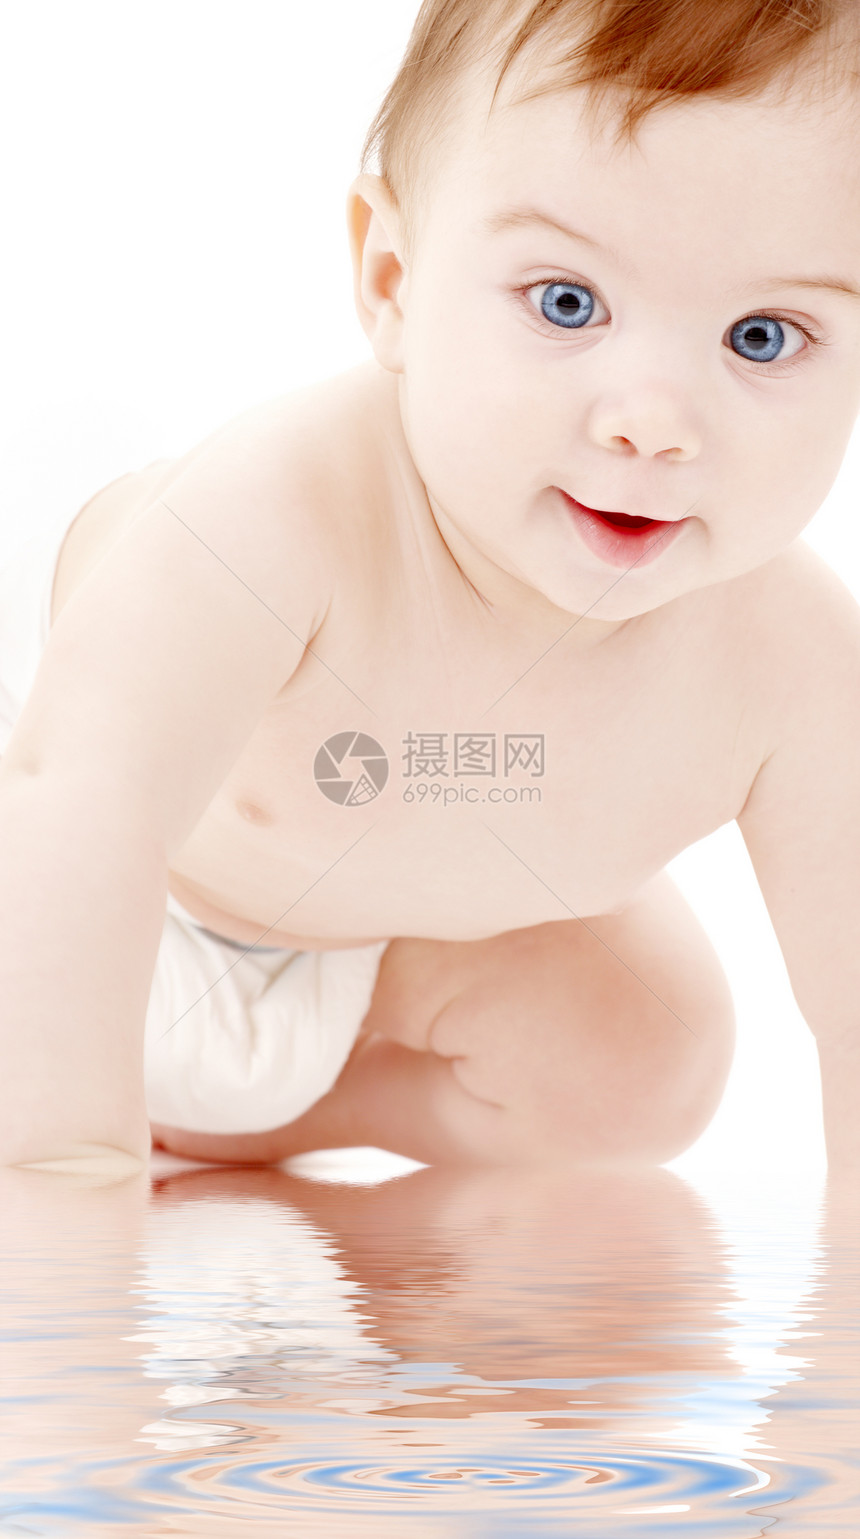 爬行婴儿男孩肖像育儿生活新生蓝色尿布青少年皮肤保健幸福微笑图片